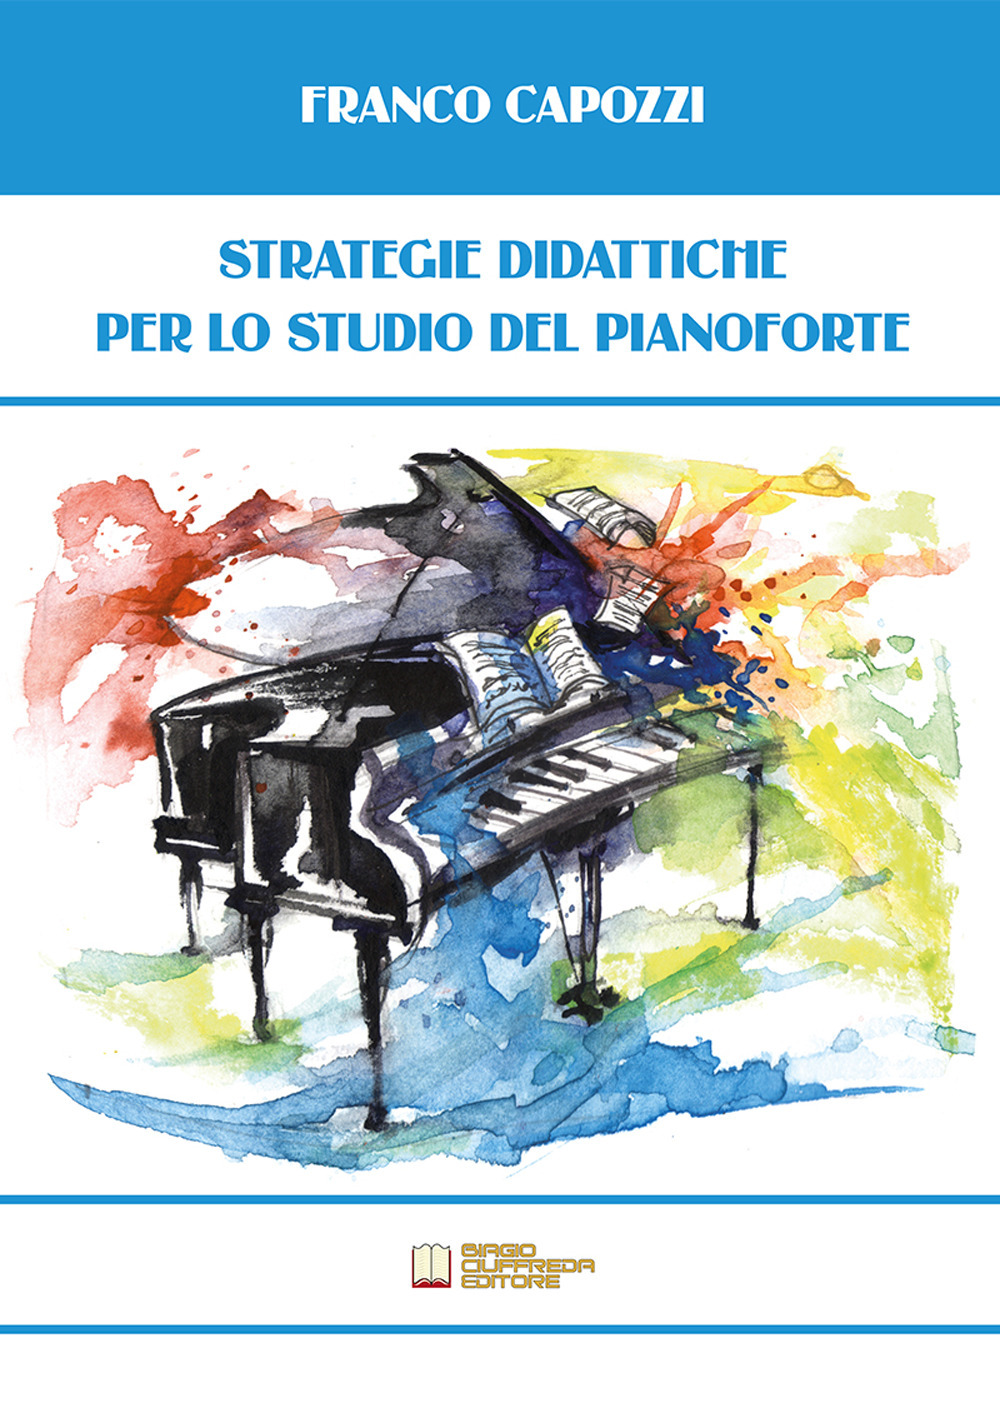 Libri Capozzi Franco - Strategie Didattiche Per Lo Studio Del Pianoforte NUOVO SIGILLATO, EDIZIONE DEL 28/09/2021 SUBITO DISPONIBILE